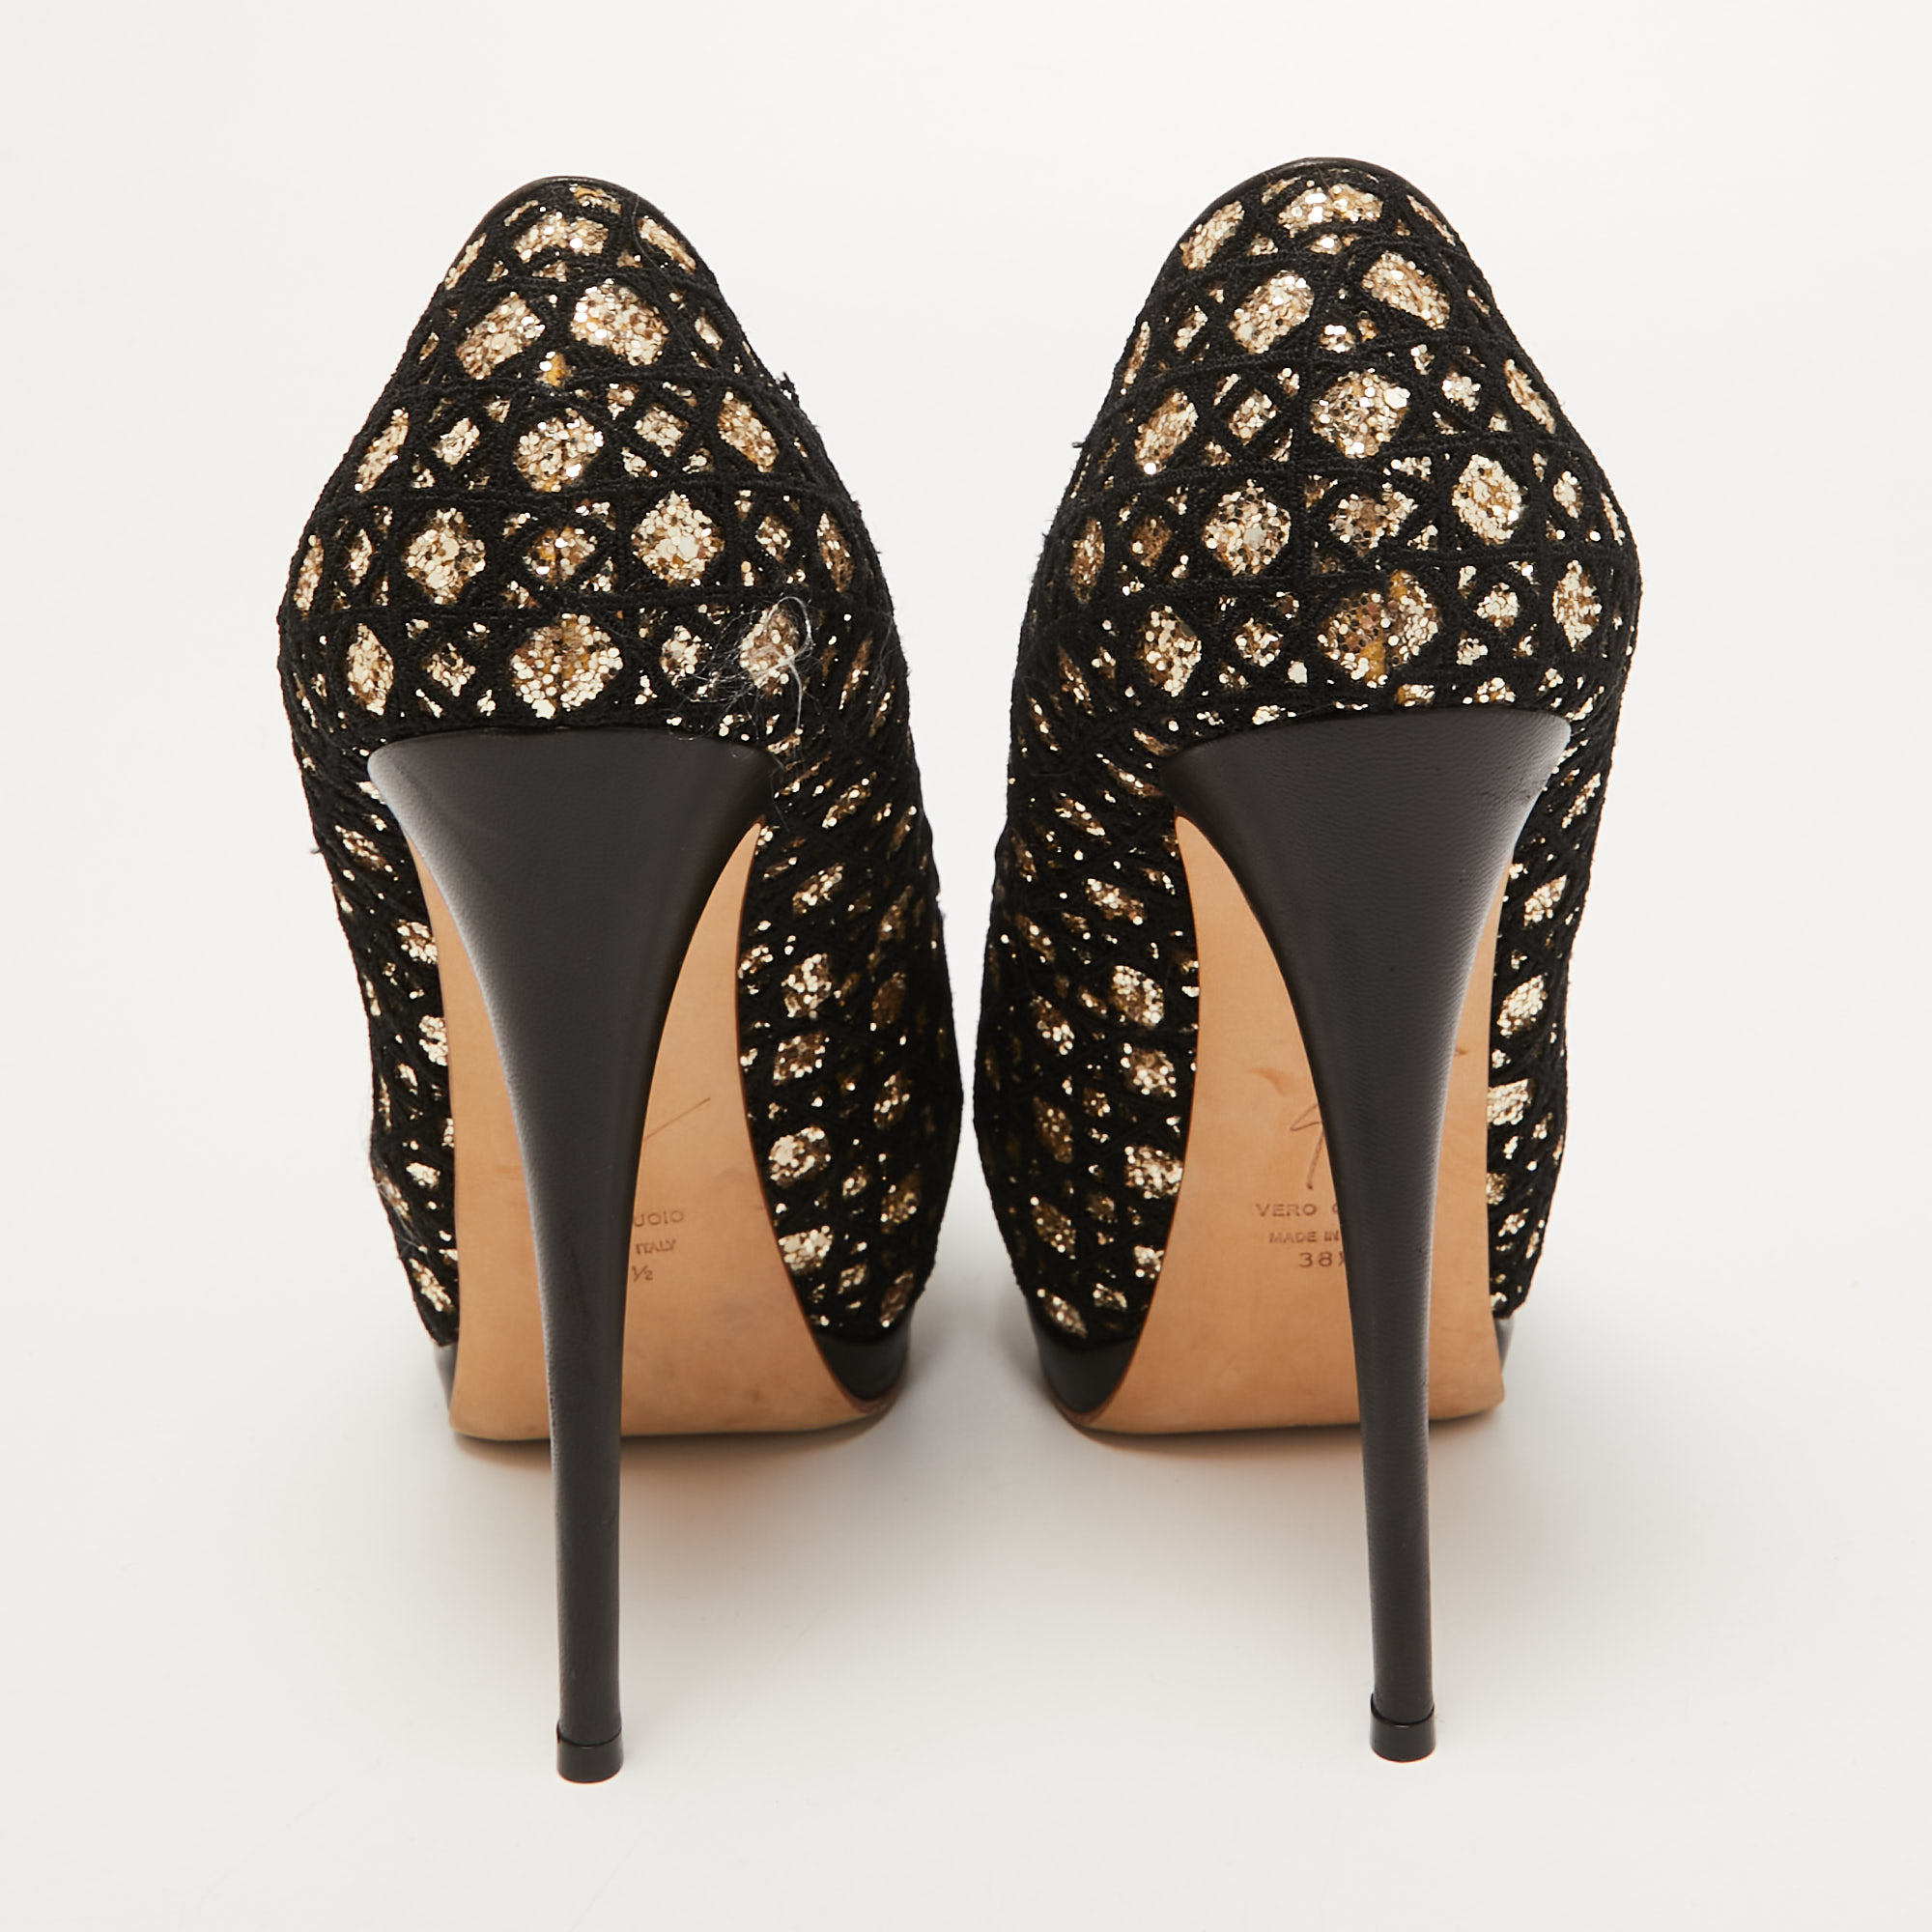 Giuseppe Zanotti Black/Gold Lace And Glitter Sharon Peep Toe Pumps Size 38.5